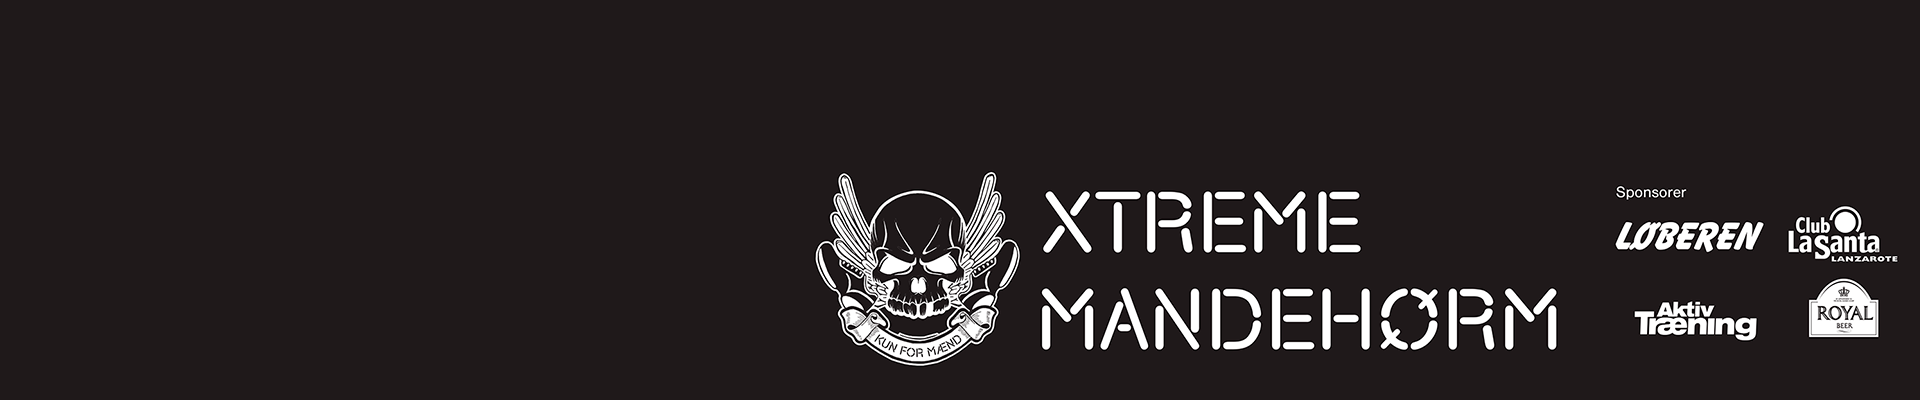 Xtreme Mandehørm 2017 - Slagelse